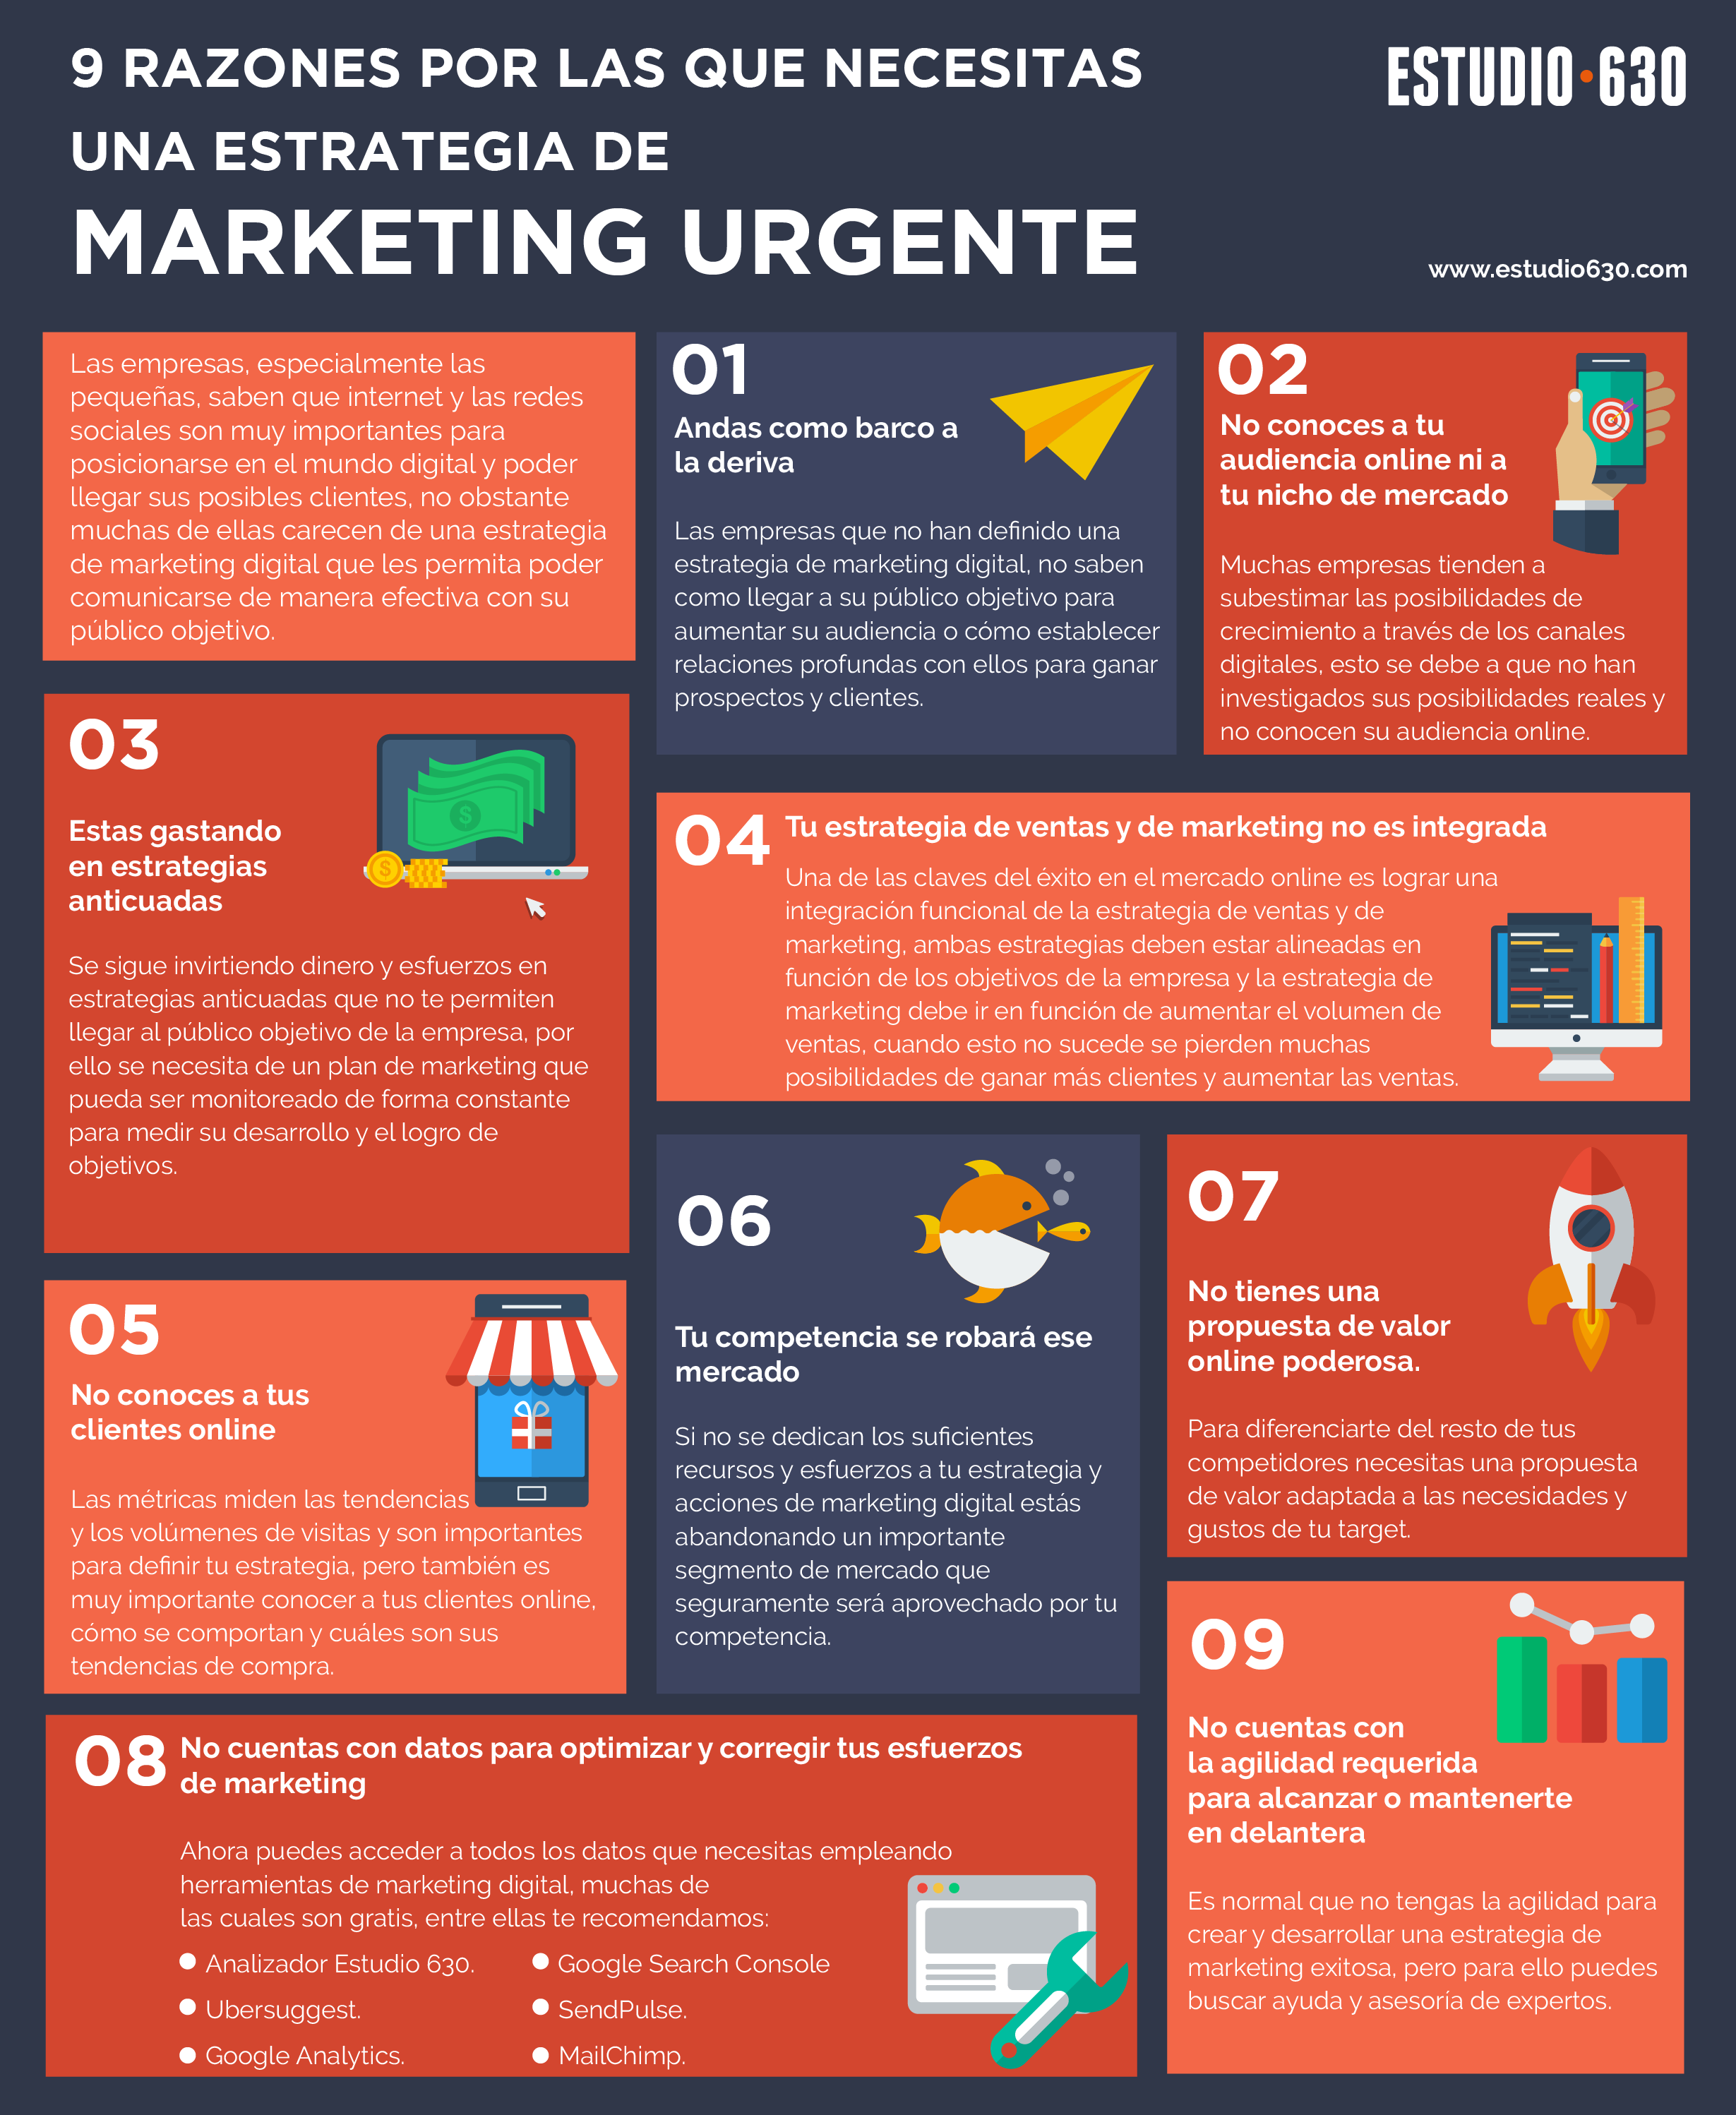 necesitas una estrategia de marketing urgente - necesitas una estrategia de marketing urgente - 9 razones por las que necesitas una estrategia de marketing urgente (infografía)